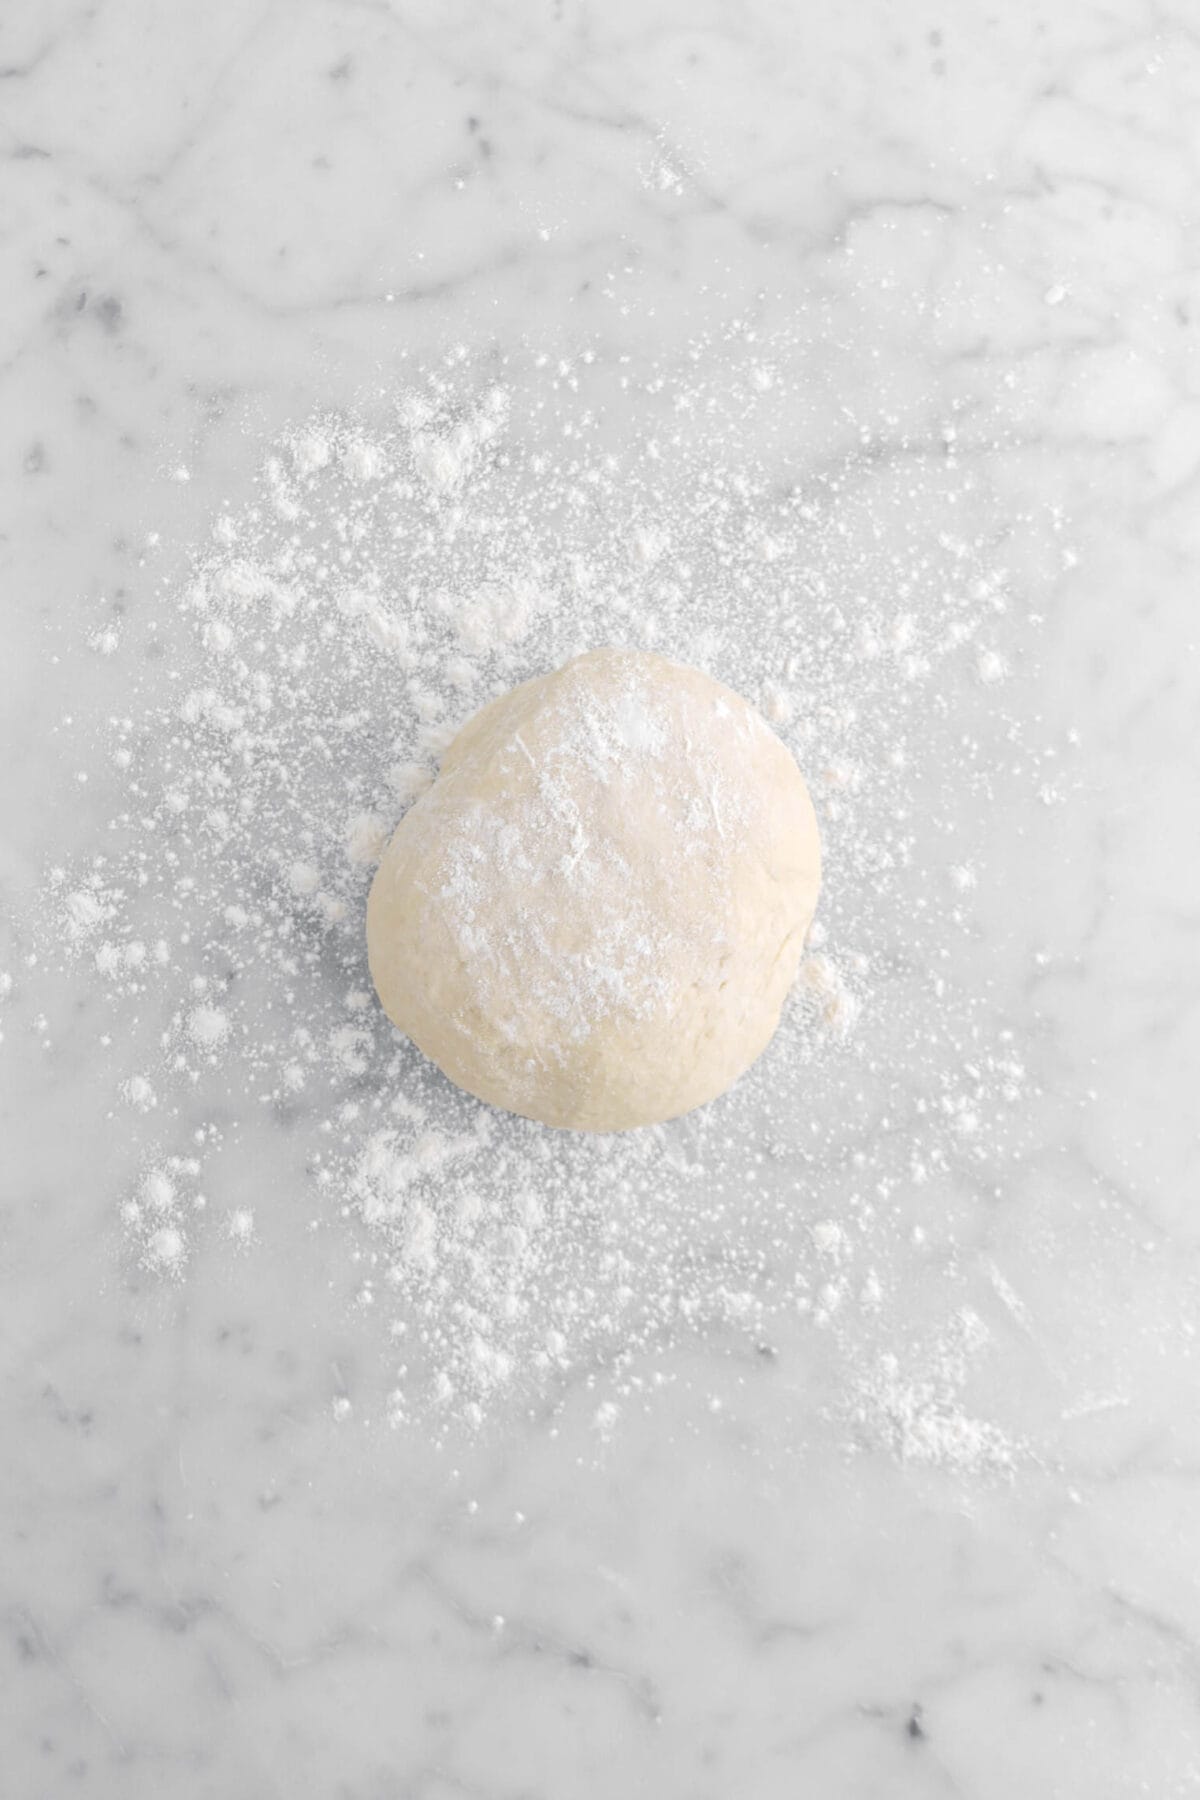 dough ball on lightly floured marble surface.